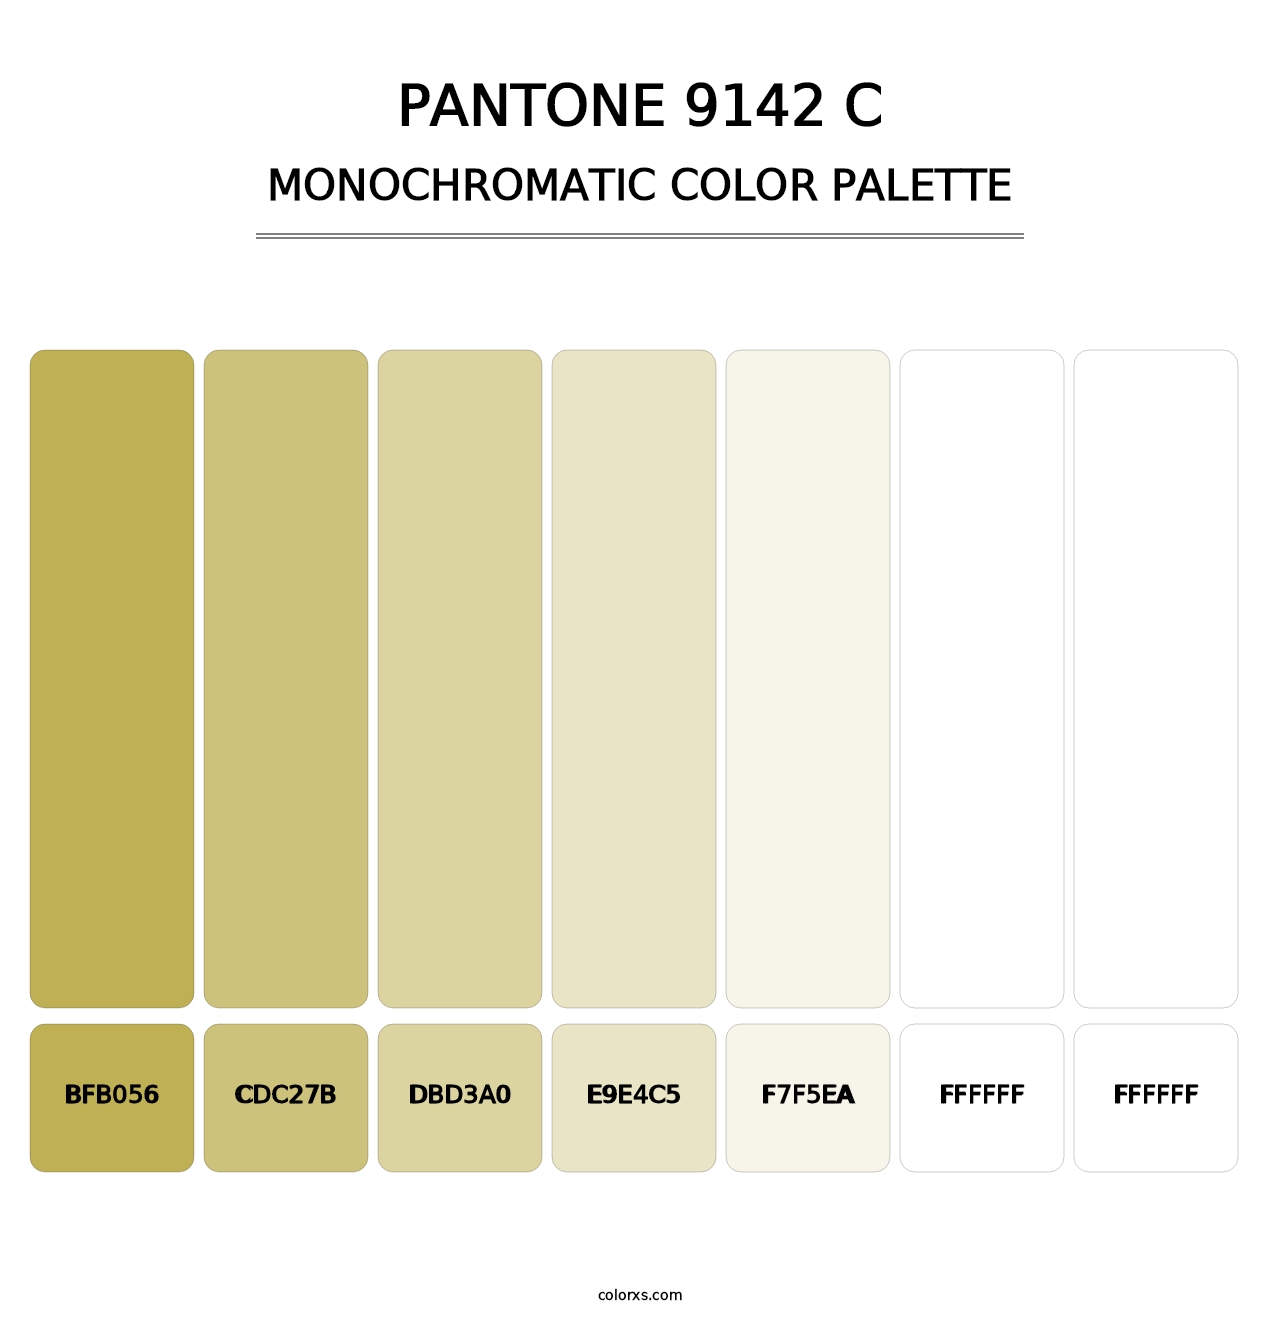 PANTONE 9142 C - Monochromatic Color Palette